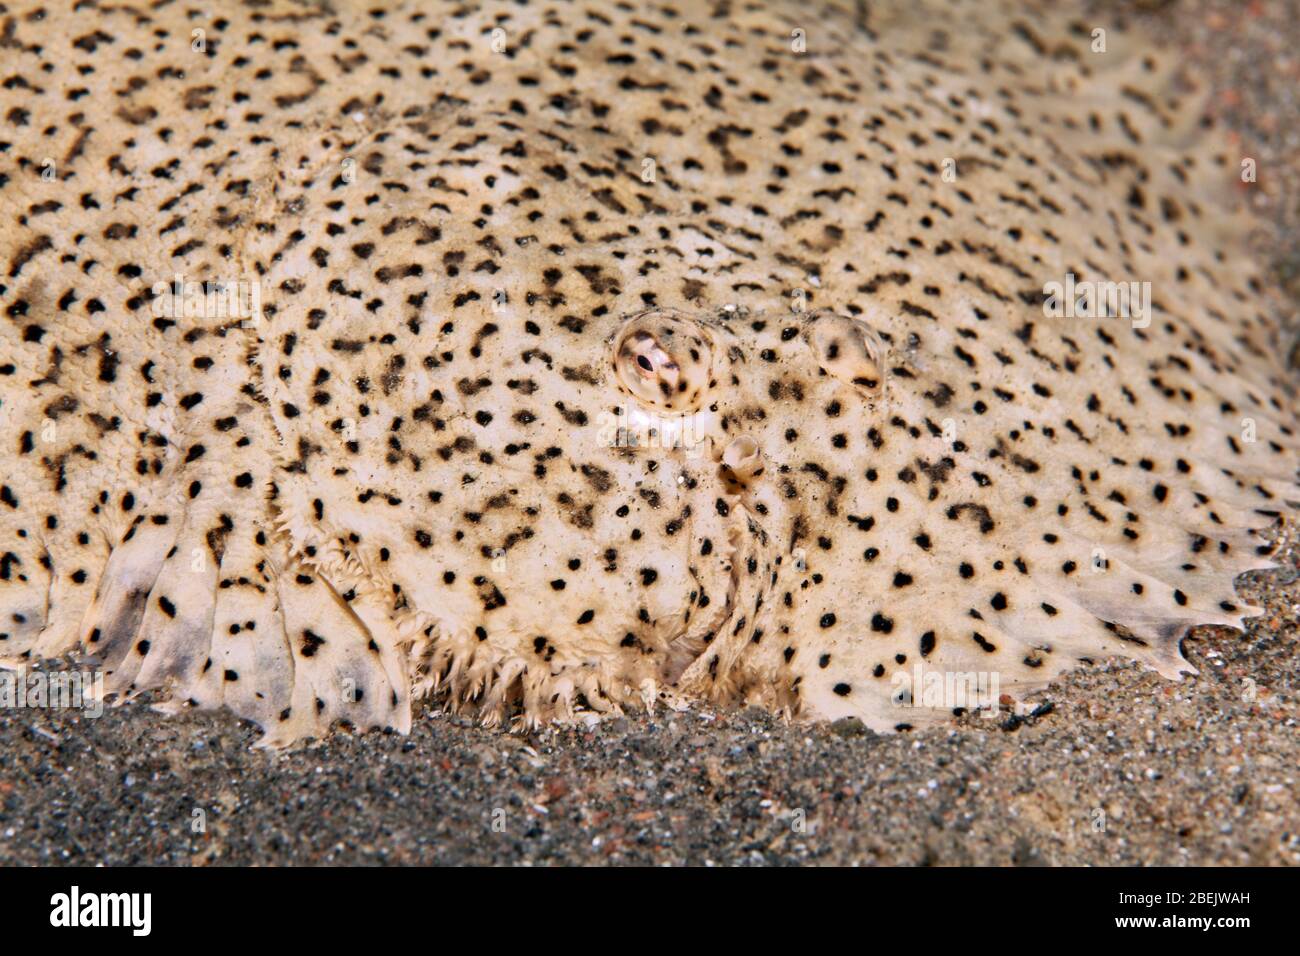 La semelle Finless (Pardachirus marmoratus) est située sur un terrain sablonneux, en mer Rouge, en Jordanie Banque D'Images